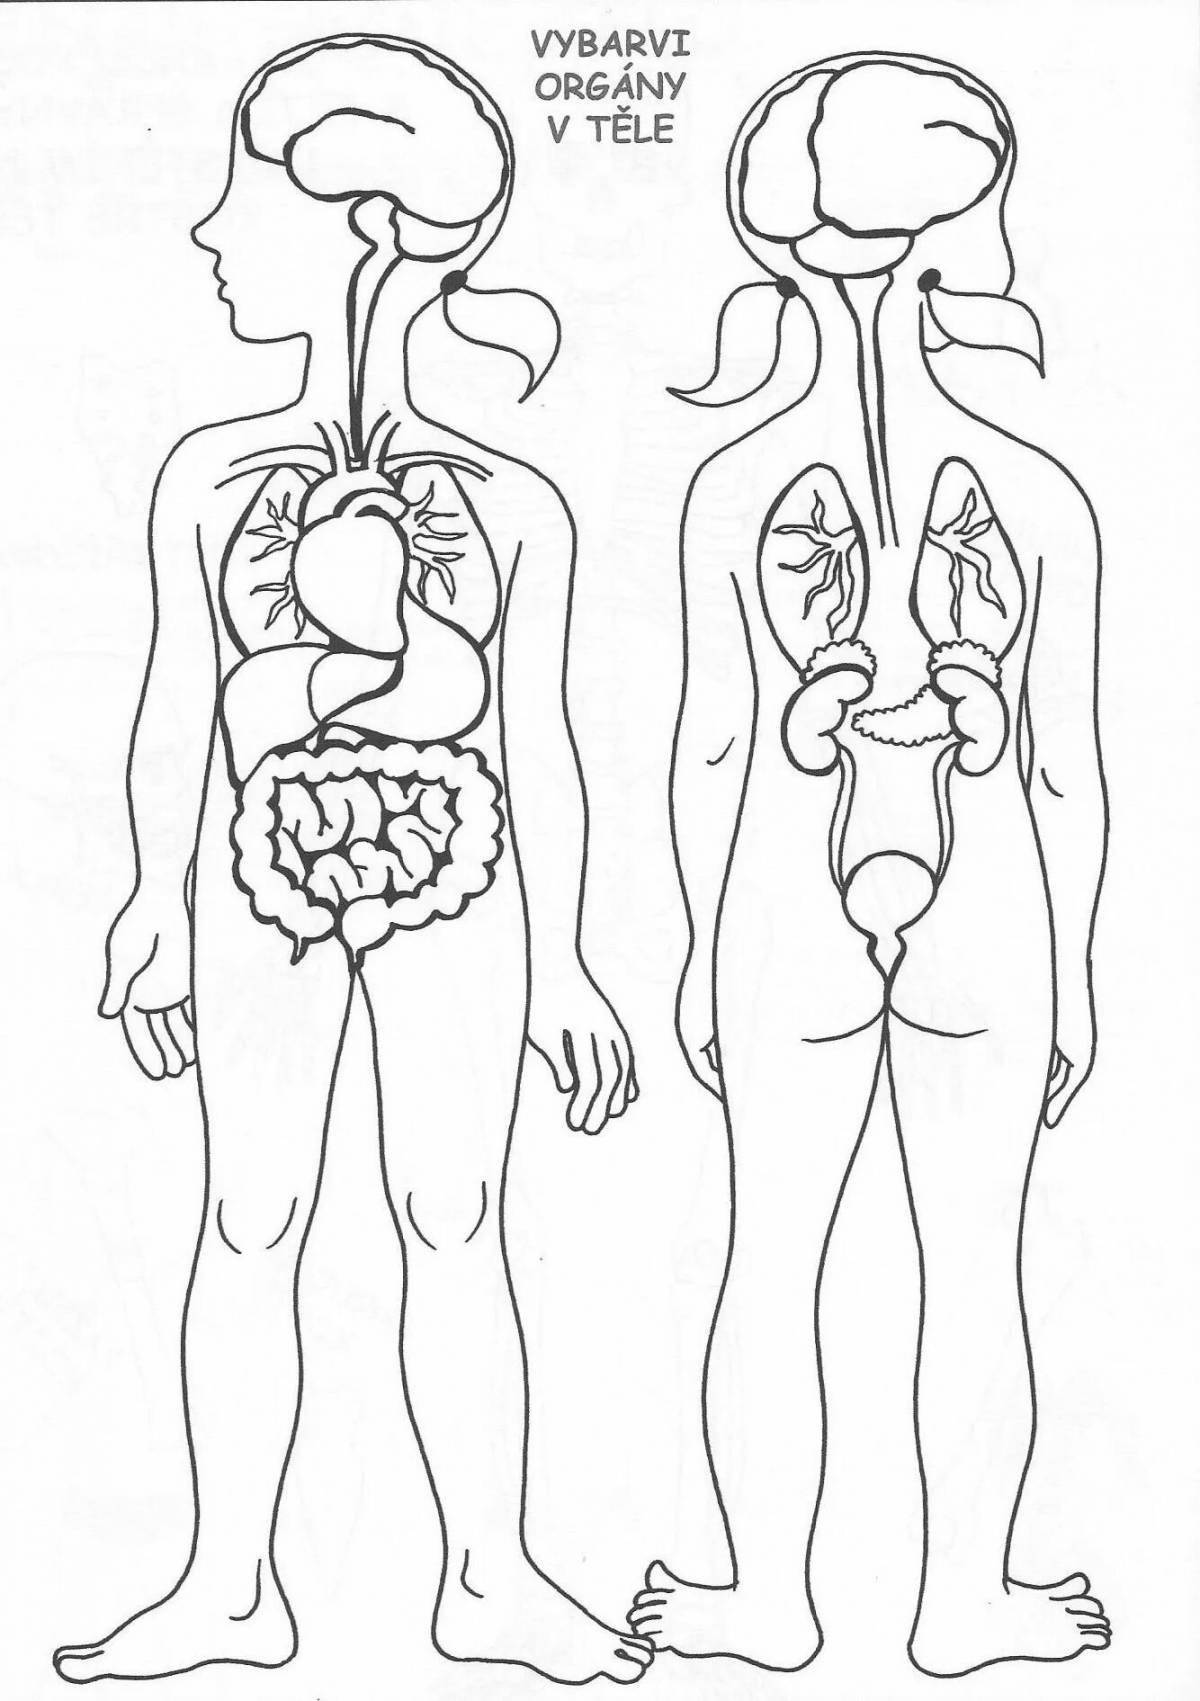 Иллюстративная раскраска внутренних органов человеческого тела